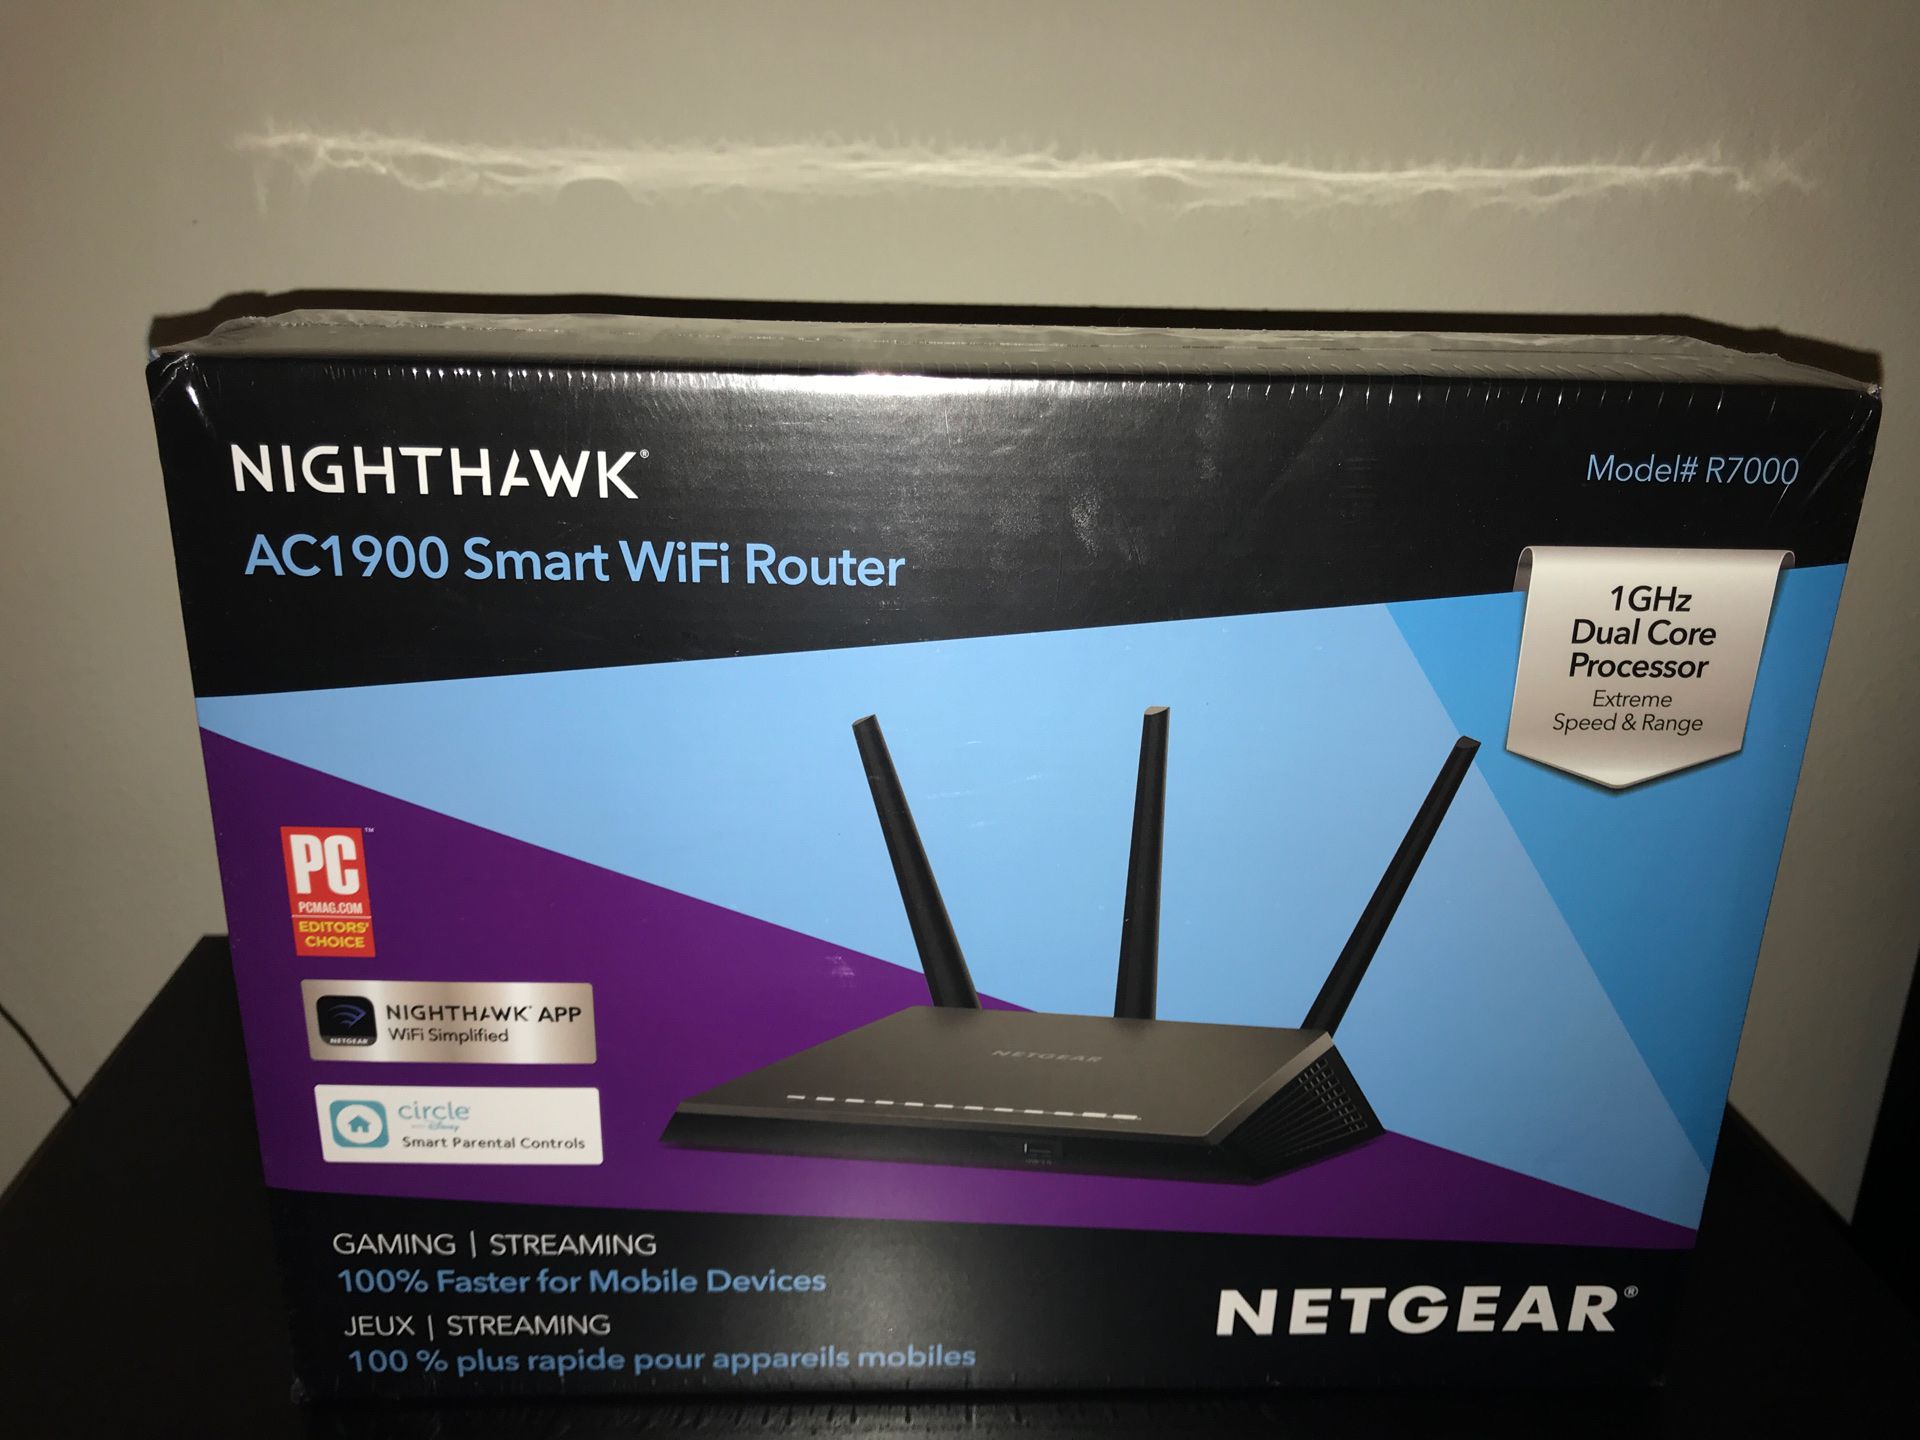 Netgear NightHawk R7000 AC1900 Smart WiFi Router